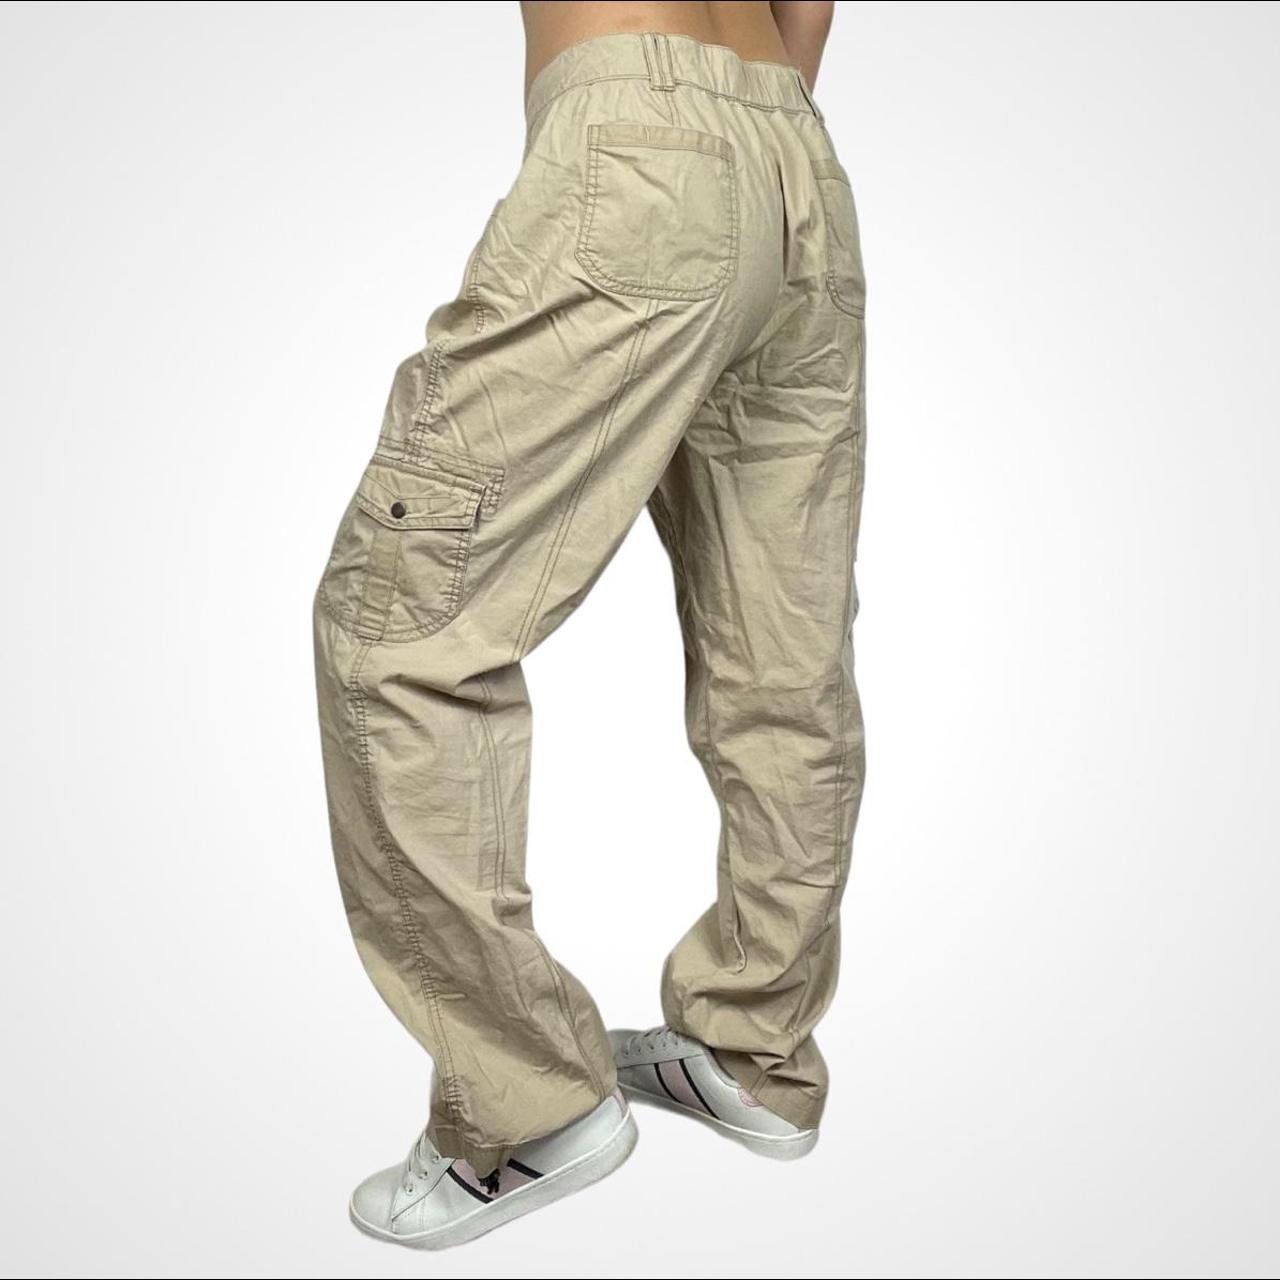 Y2K Earthcore Cargo Pants in beige#N##N#brand: St.... - Depop